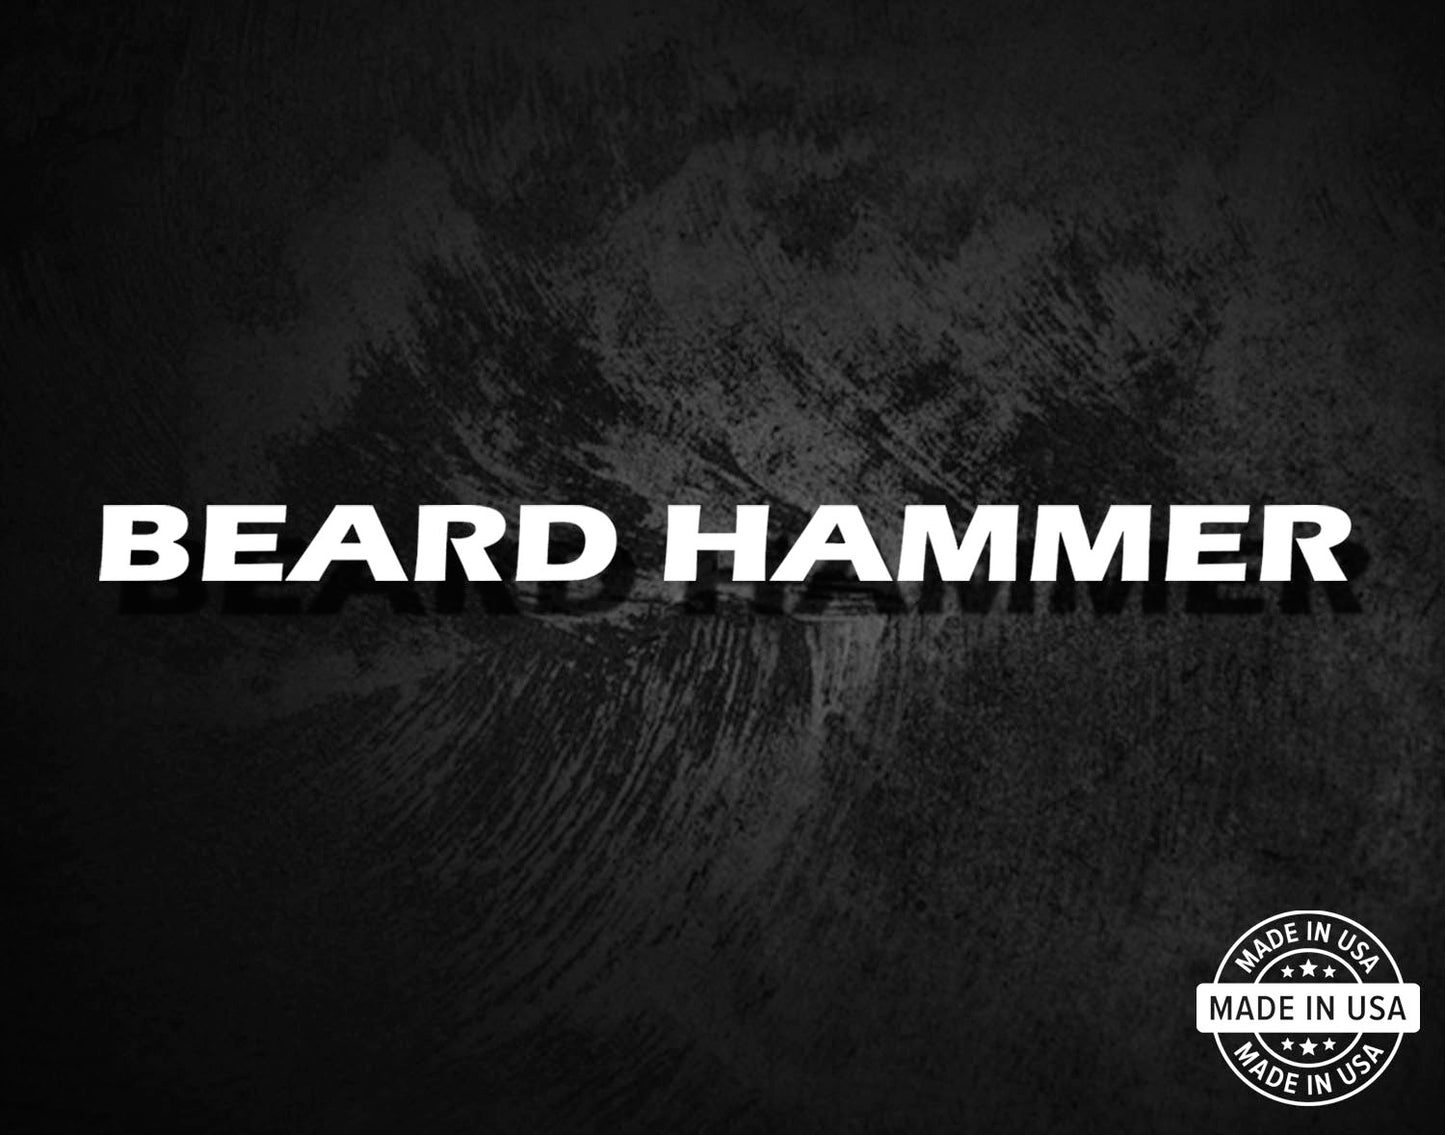 Beard Hammer - Shotgun Barrel Decal